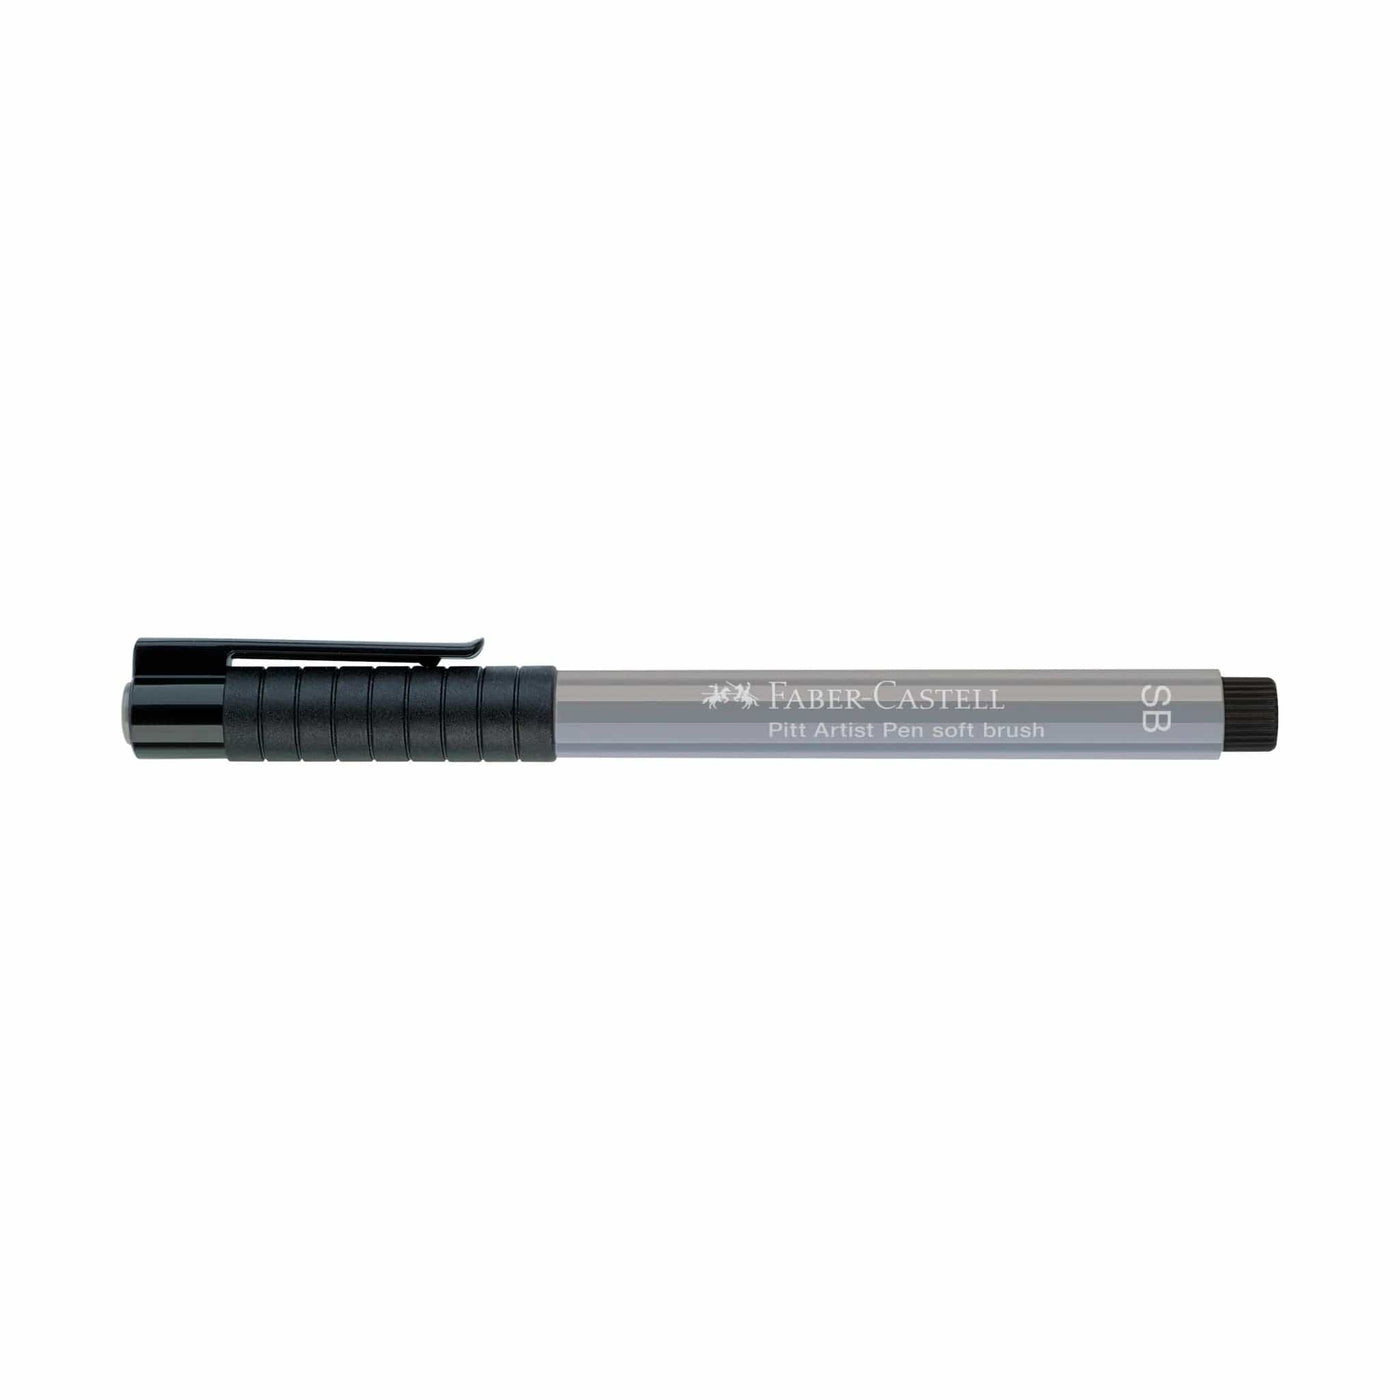 Soft Brush Pitt Artist Pen from Faber Castell - 232 Cold Grey III